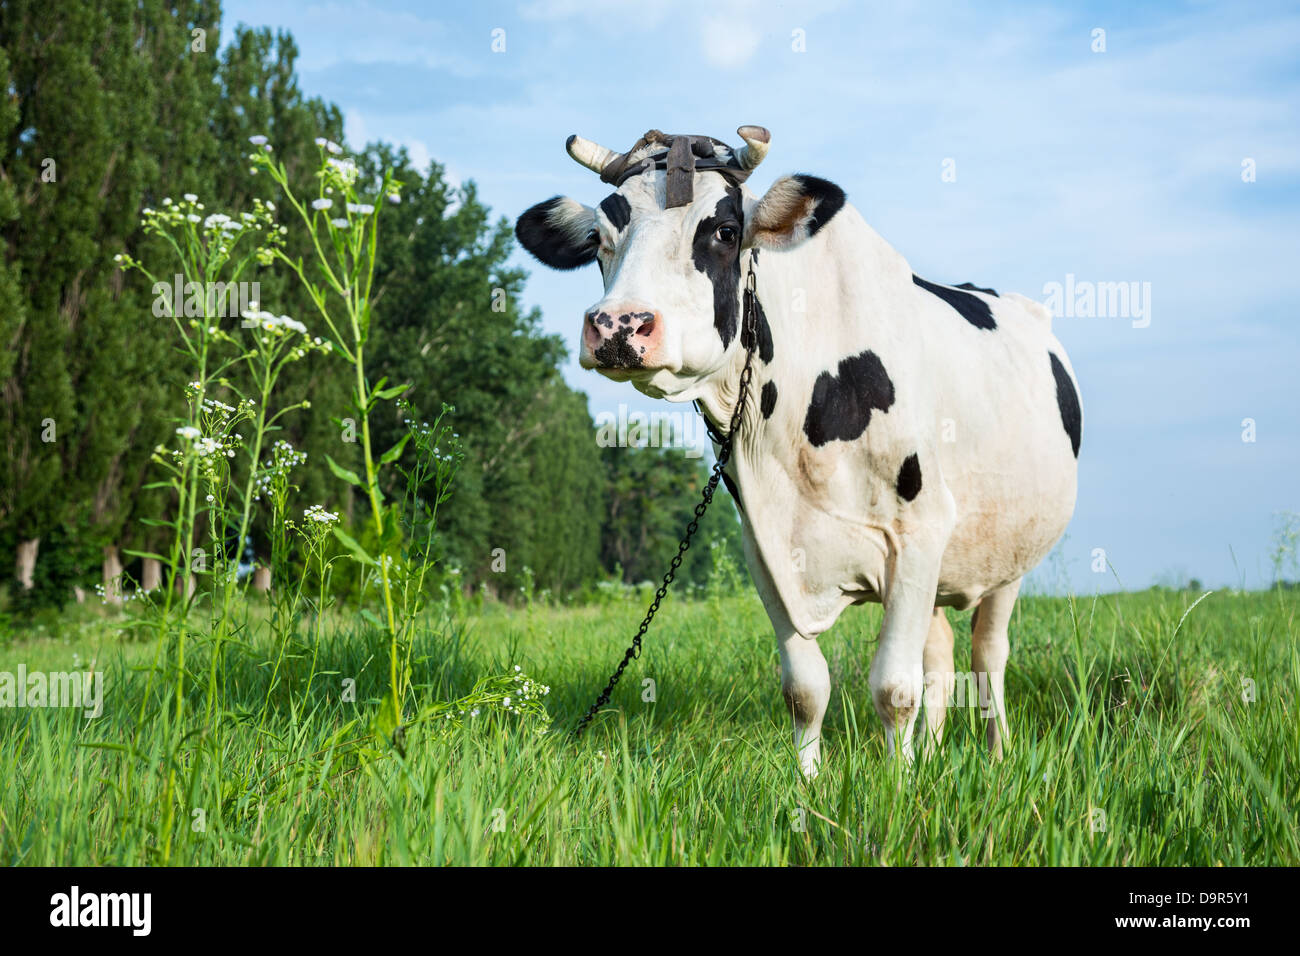 Drôle de couleur noir et blanc sur un pâturage des vaches laitières avec de l'herbe verte Banque D'Images